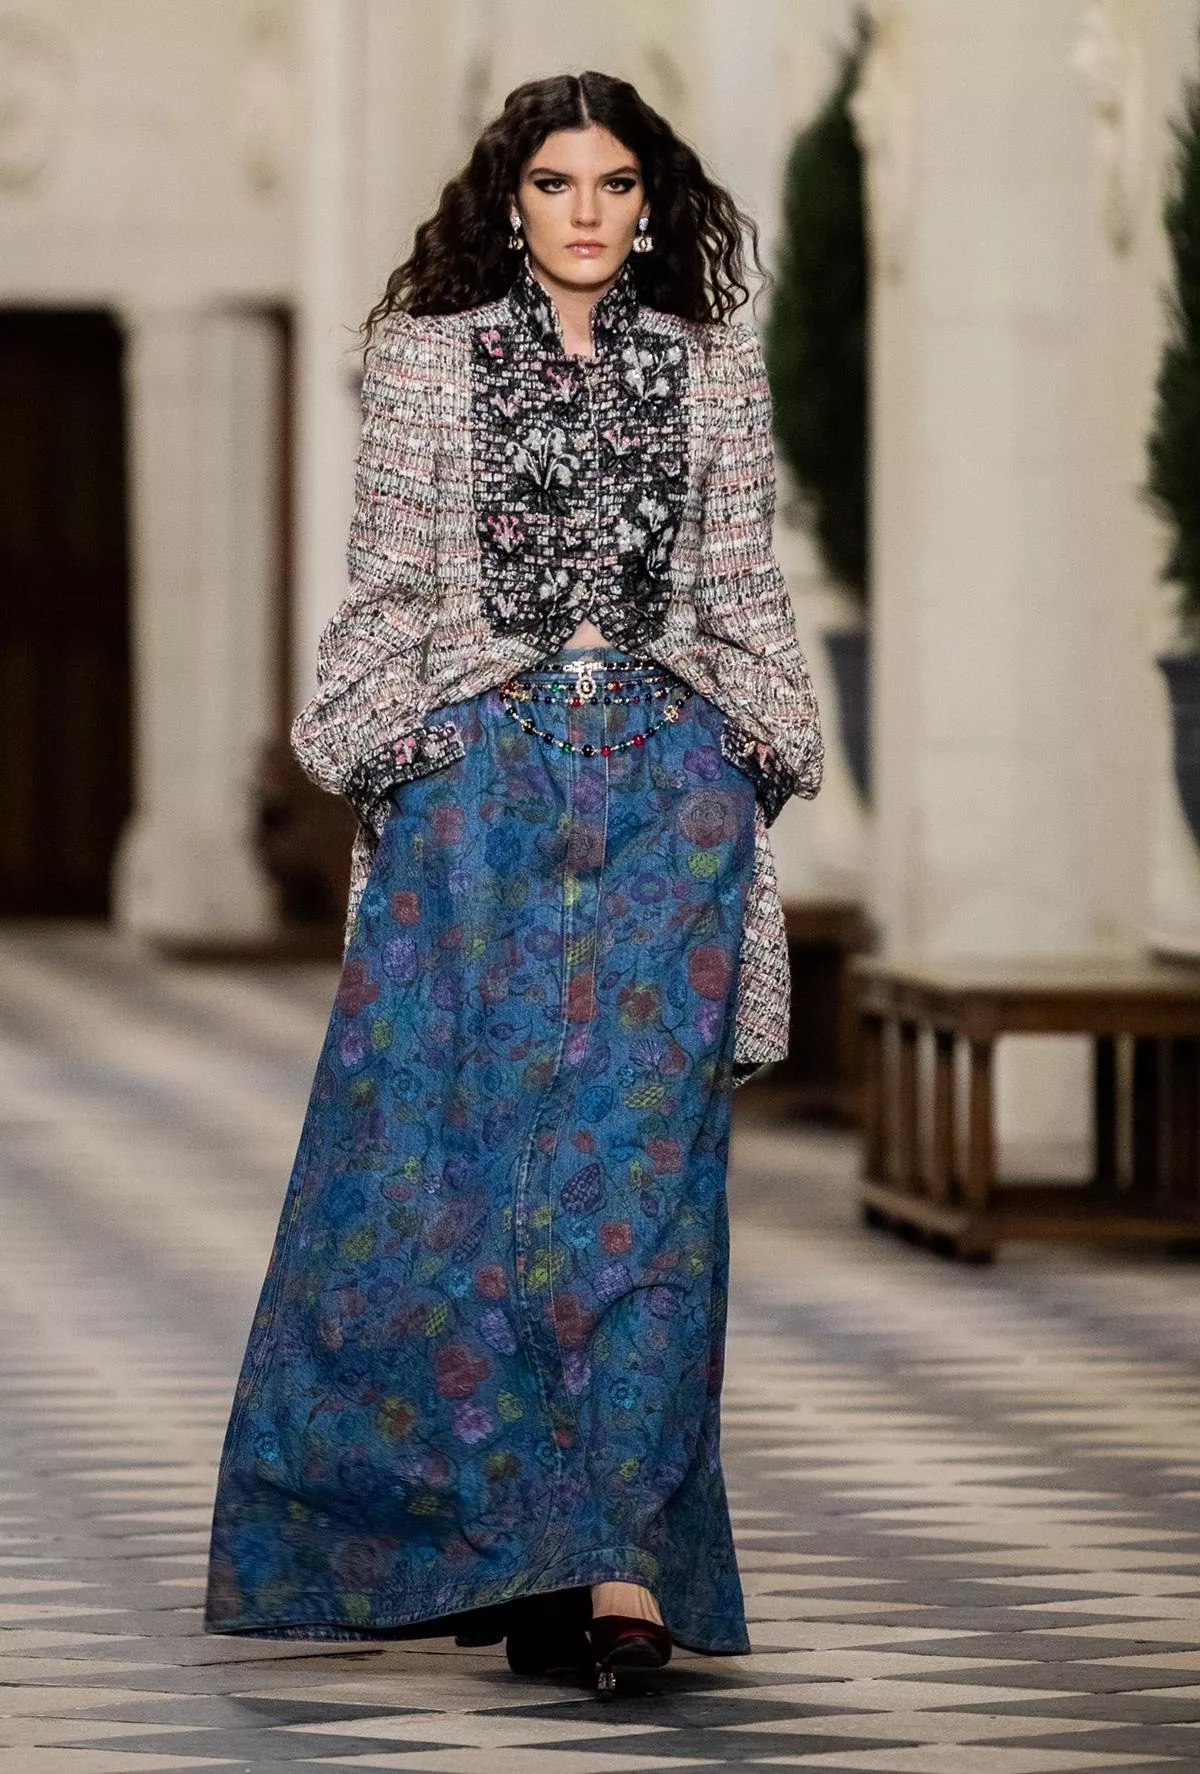 Chanel تطلق مجموعة Métiers d’art 2020-2021: تصاميم تجسّد عصر النهضة في المملكة الفرنسية